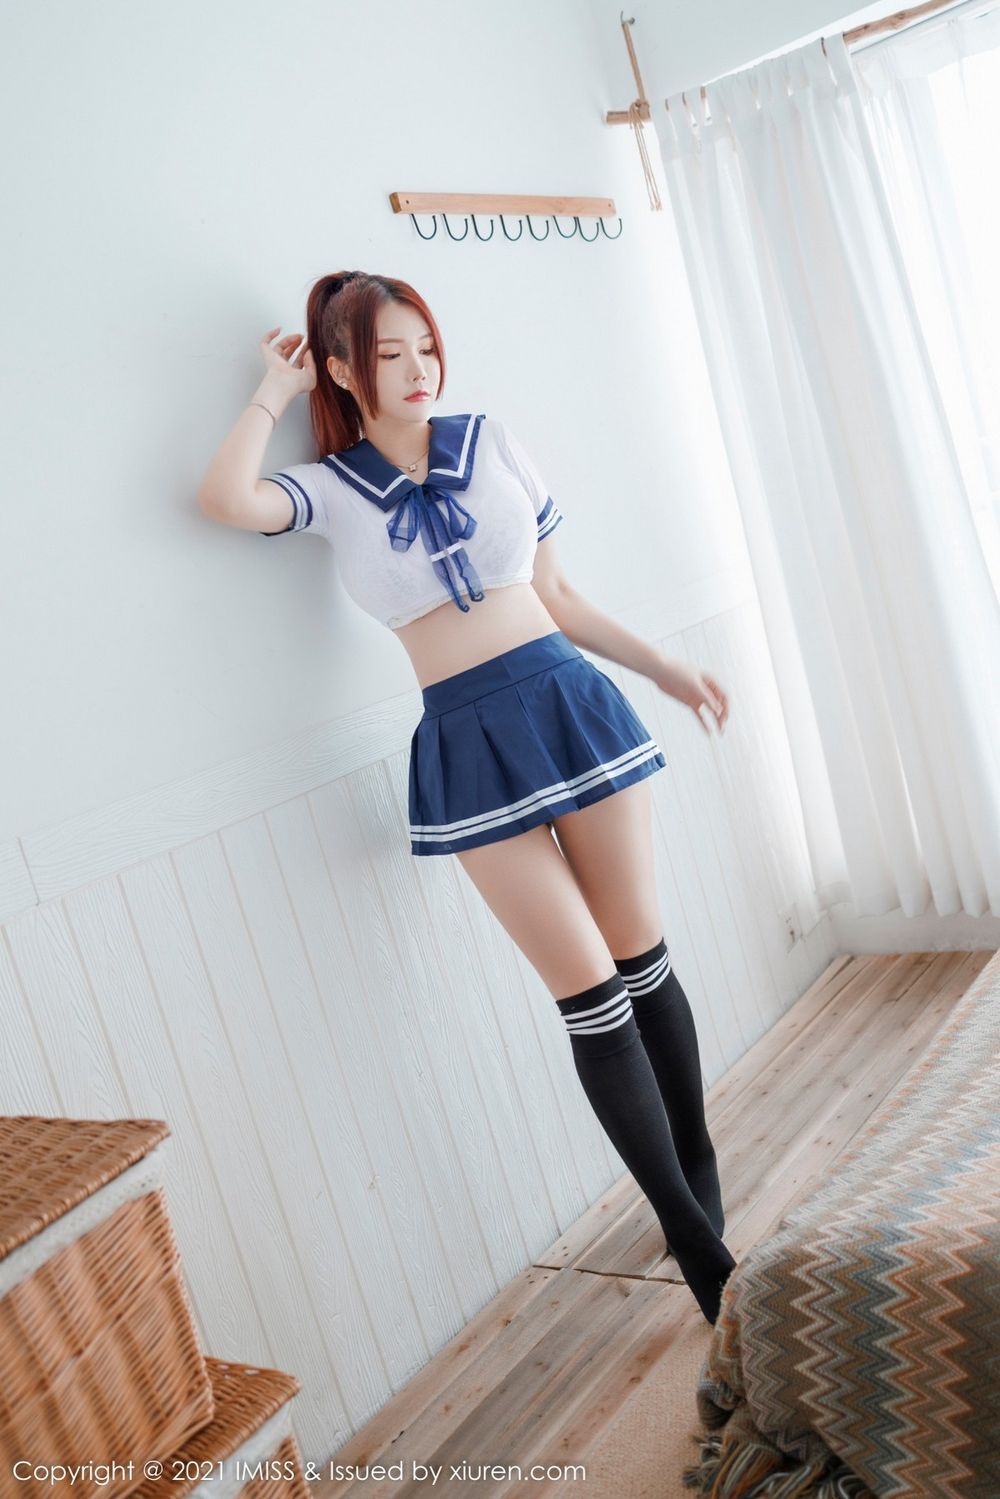 美女模特Evon陈赞之短款白T搭配蓝色超短裙性感写真